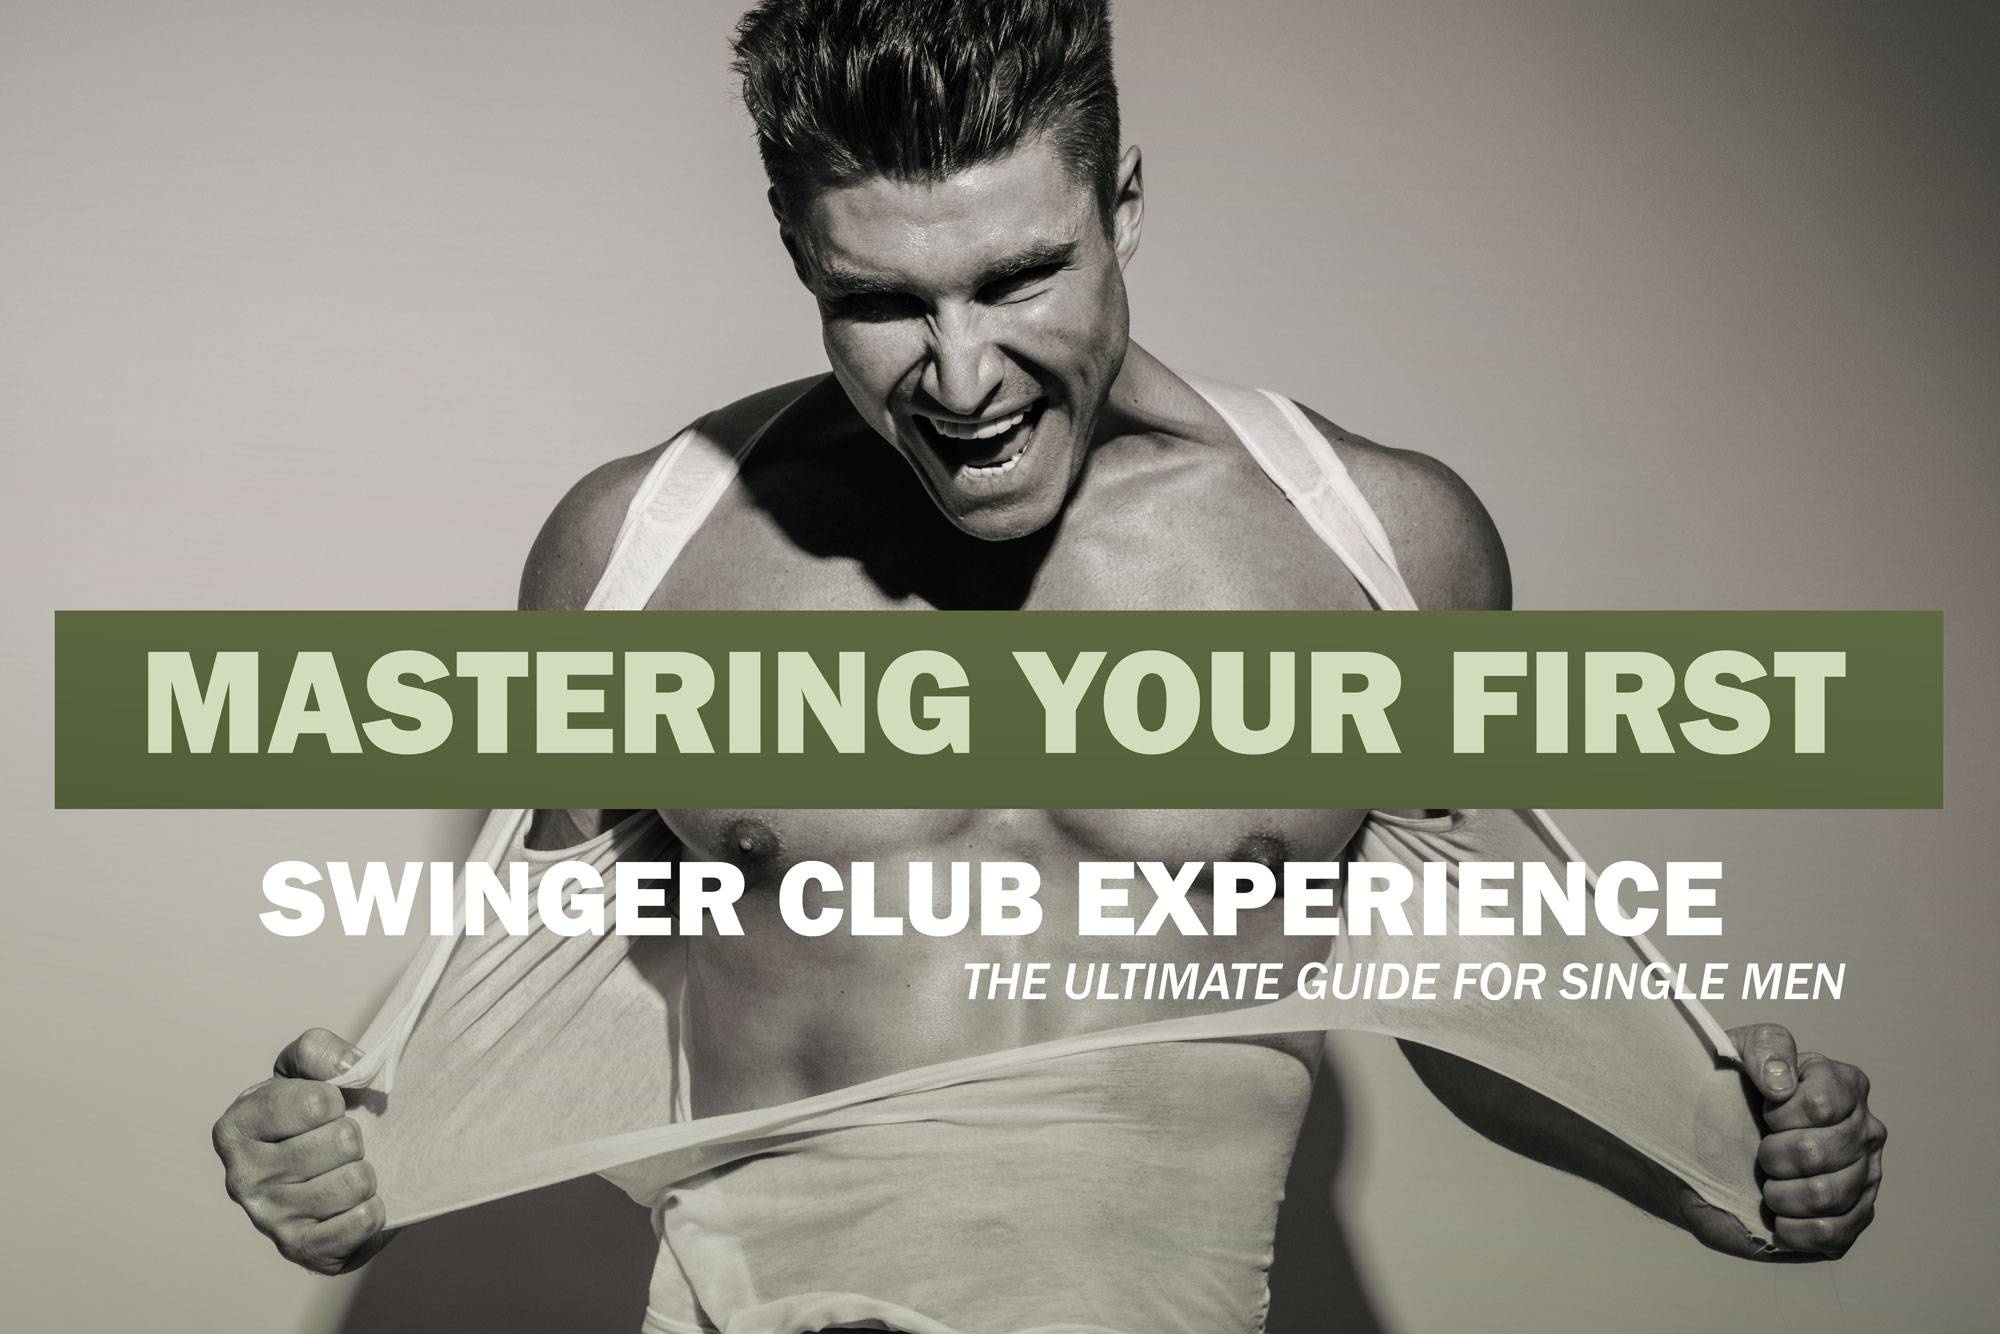 Swinger club for single men